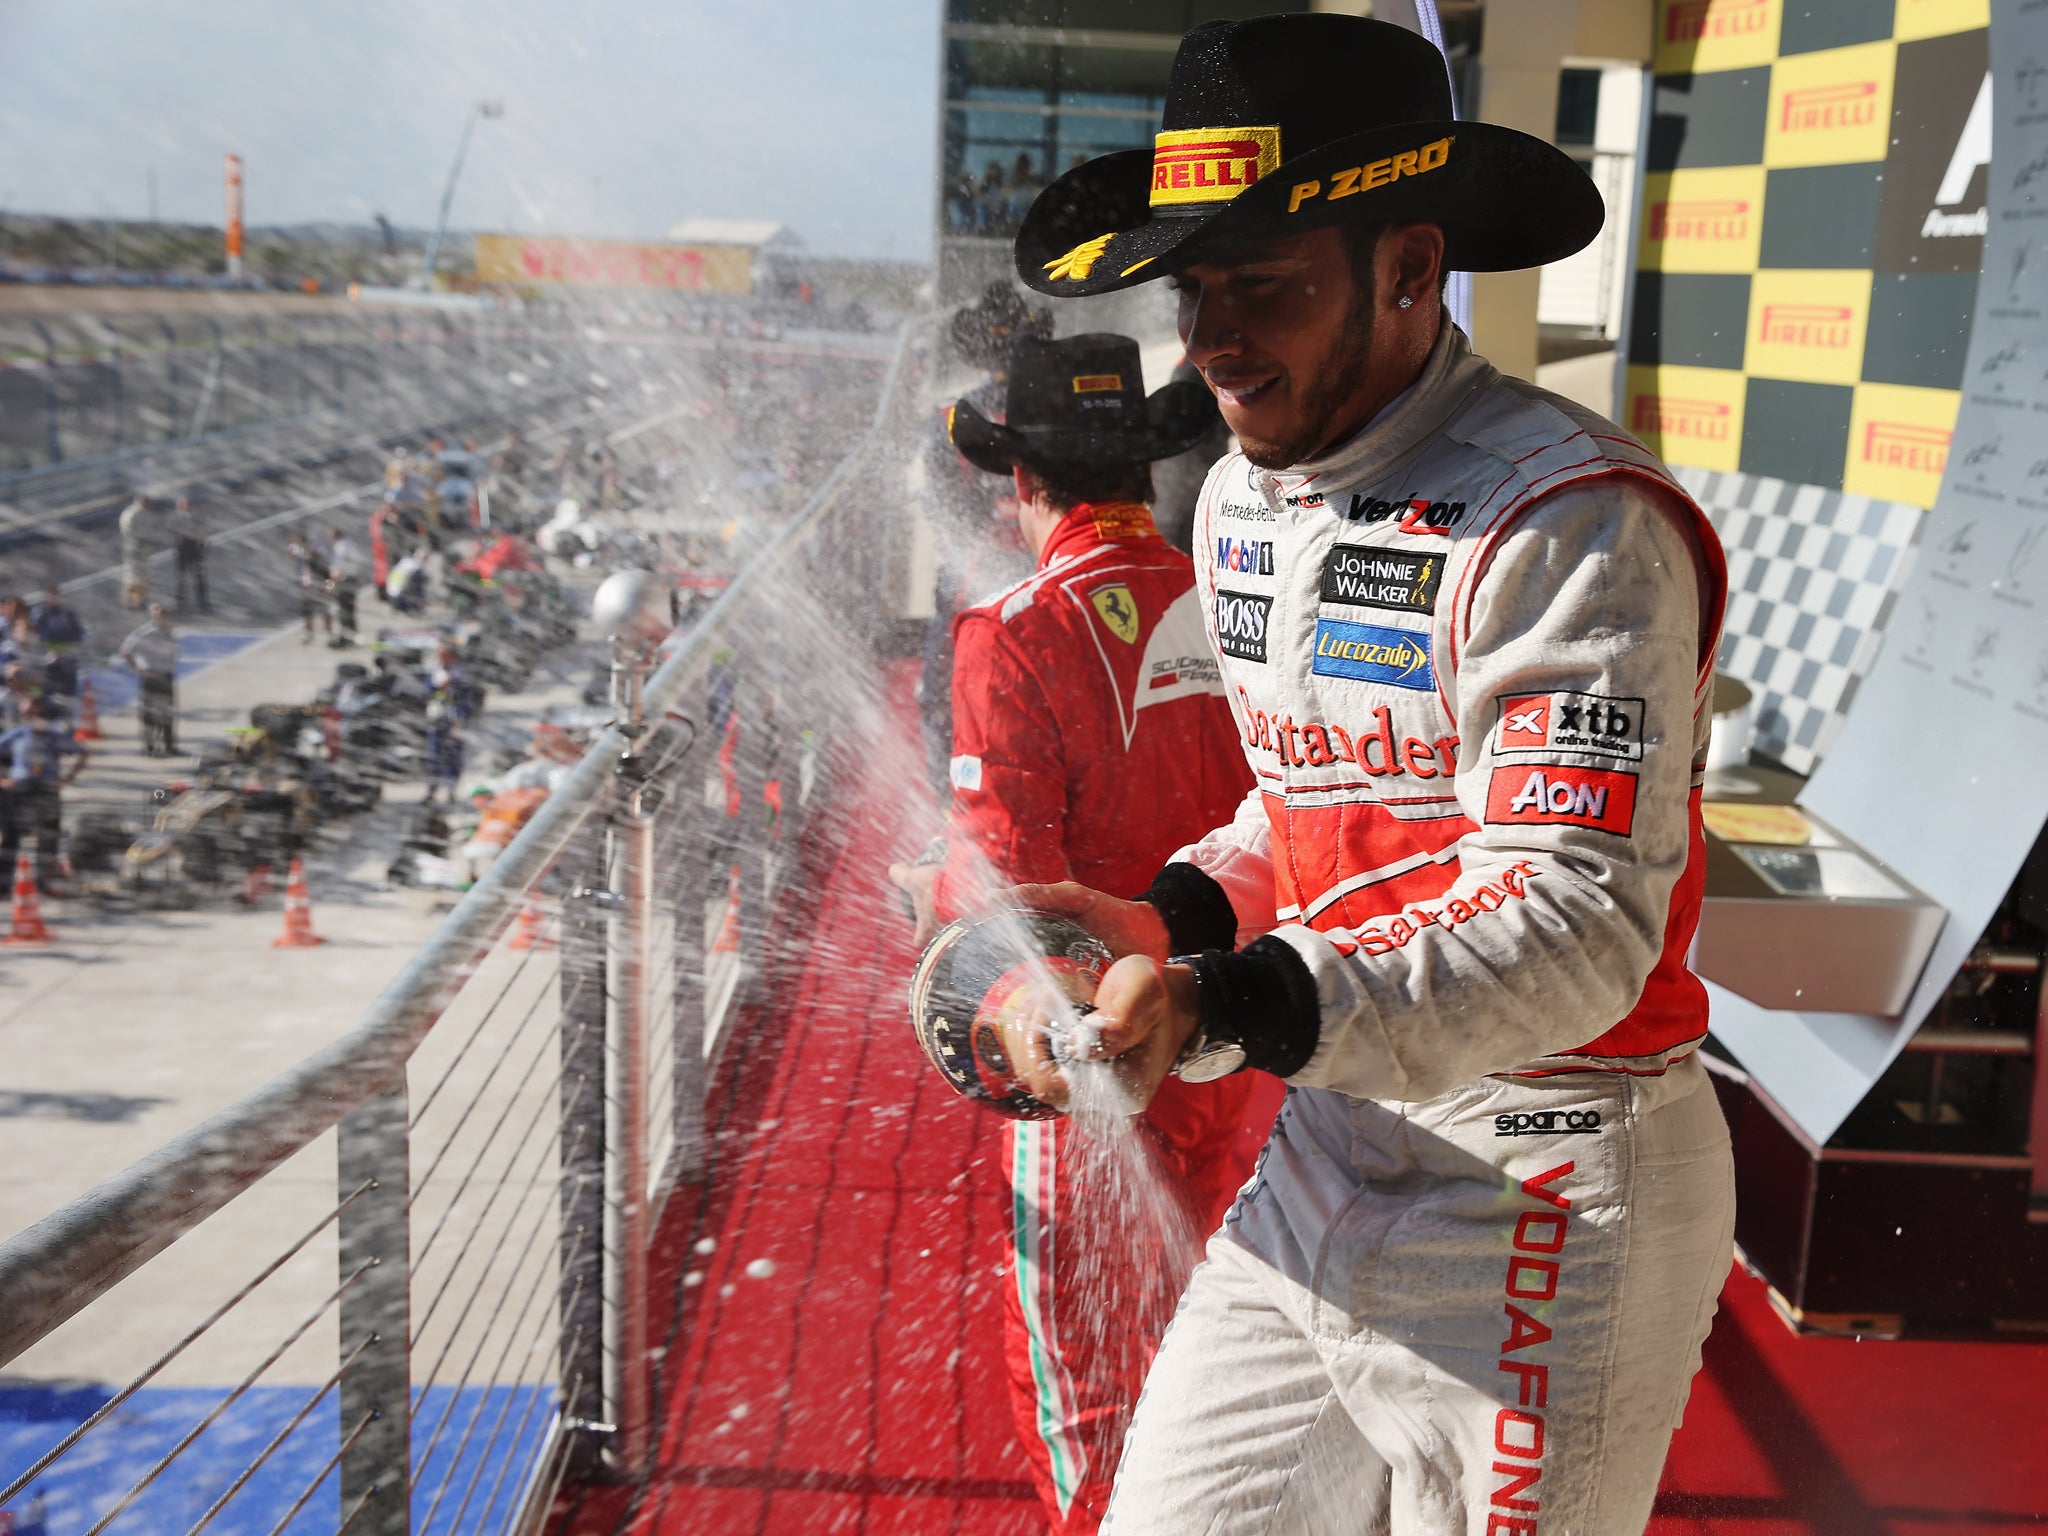 Lewis Hamilton celebrates on the podium after winning the United States Formula One Grand Prix